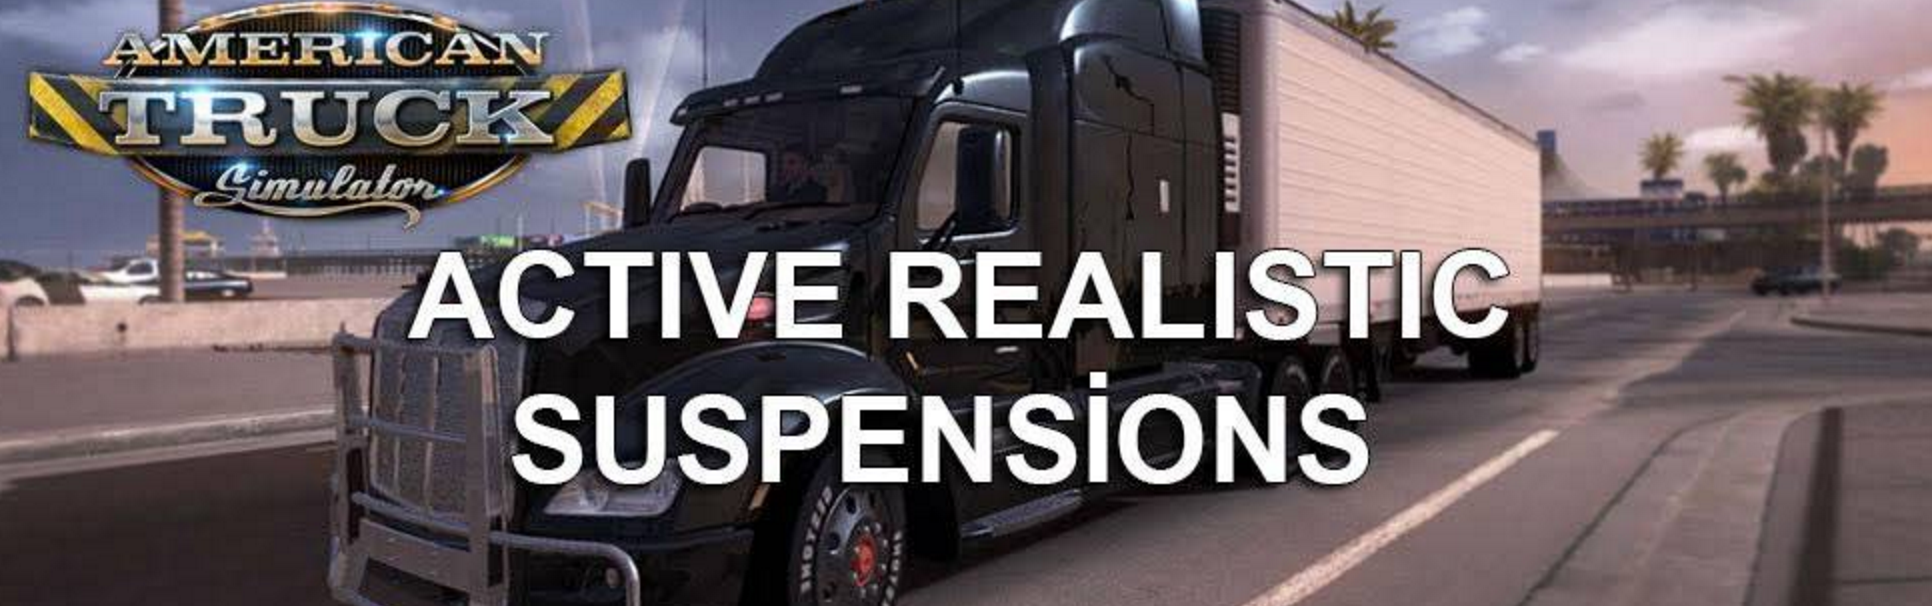 Active realistic suspension